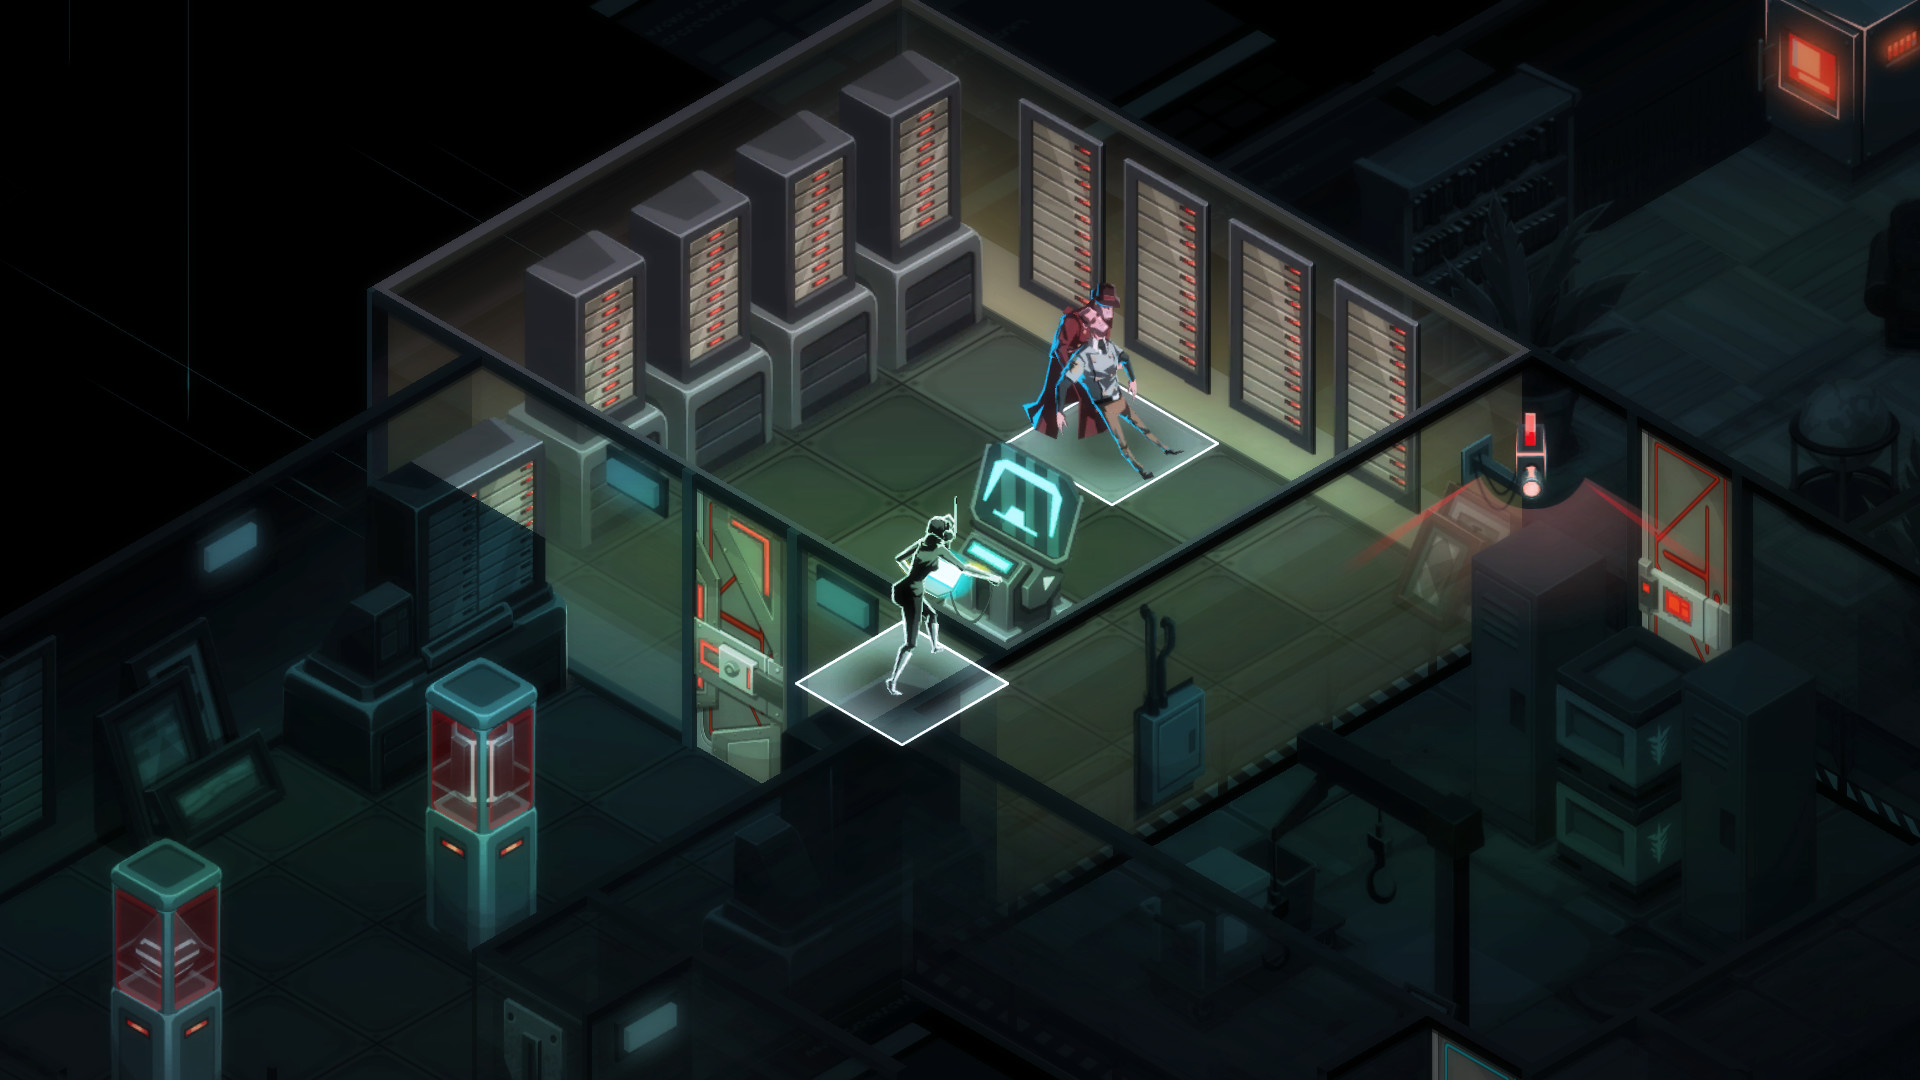 Trò chơi chiến lược di động tốt nhất: Hình ảnh Invisible Inc. cho thấy một nhân vật sử dụng thiết bị đầu cuối máy tính trong một cơ sở tối